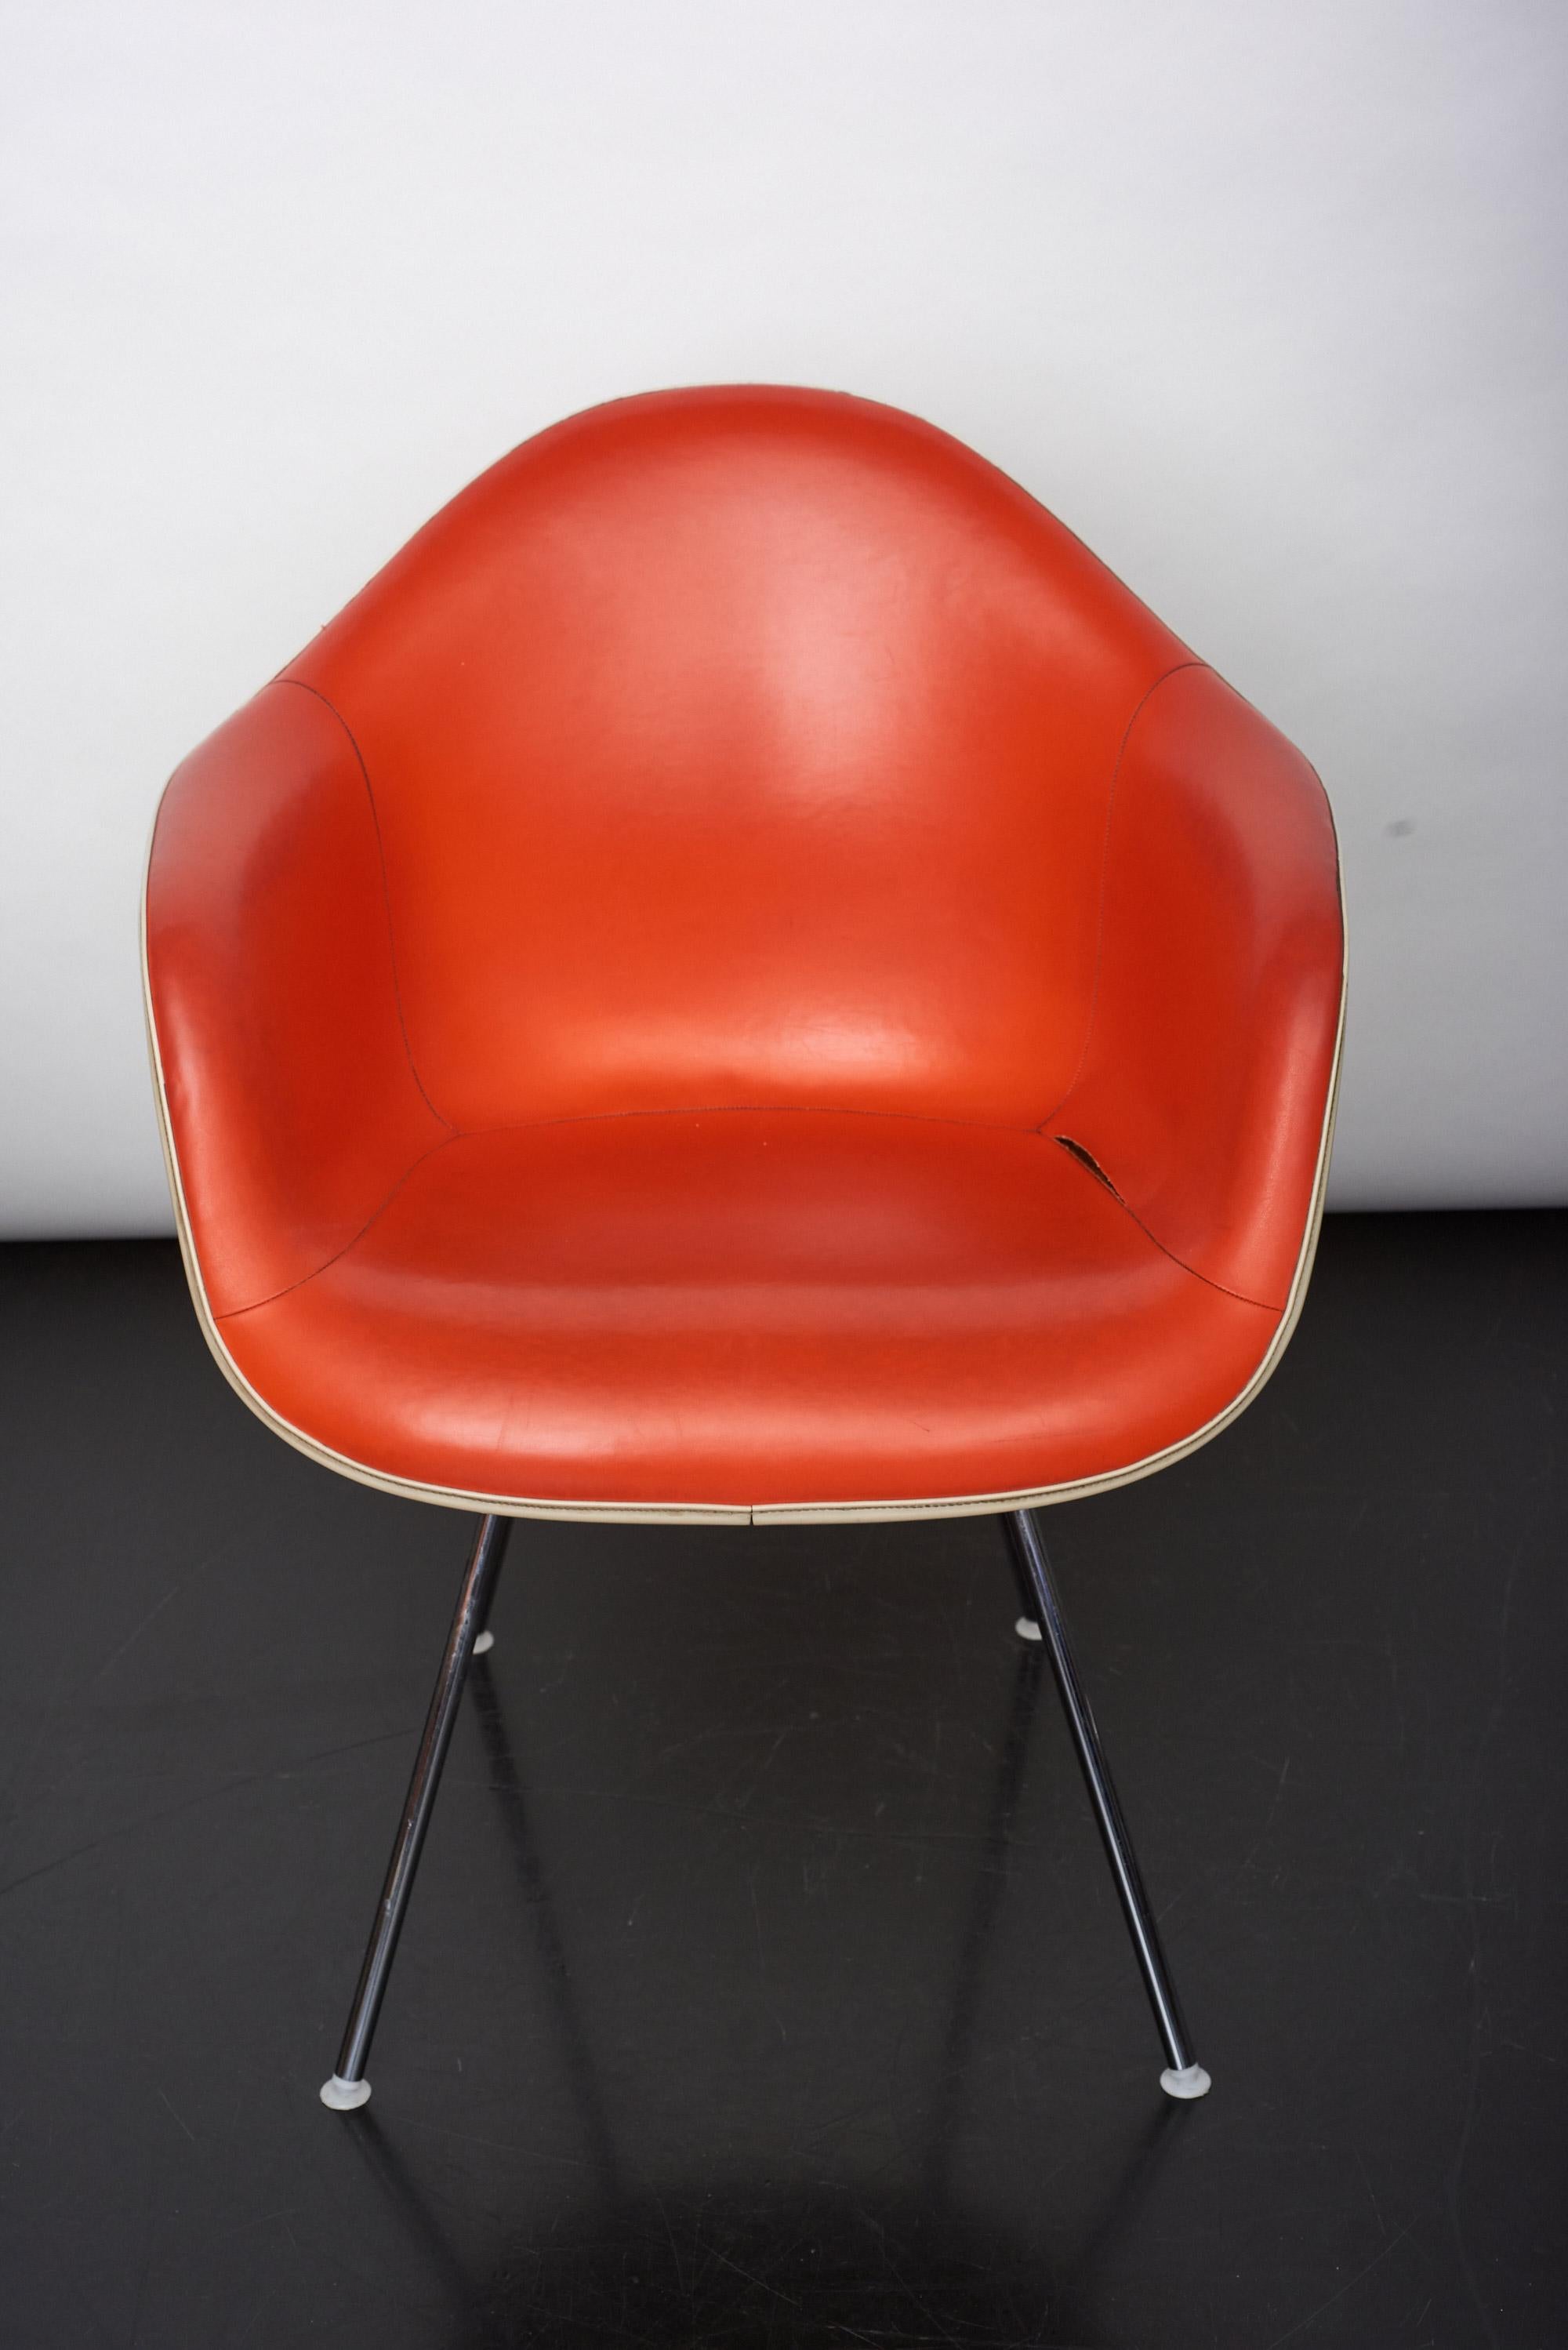 La chaise DAX, entièrement rembourrée, fait partie de la collection de fauteuils en plastique Eames, présentée pour la première fois dans le cadre d'un concours organisé par le Moma de New York. Une pièce emblématique du design dans une version très